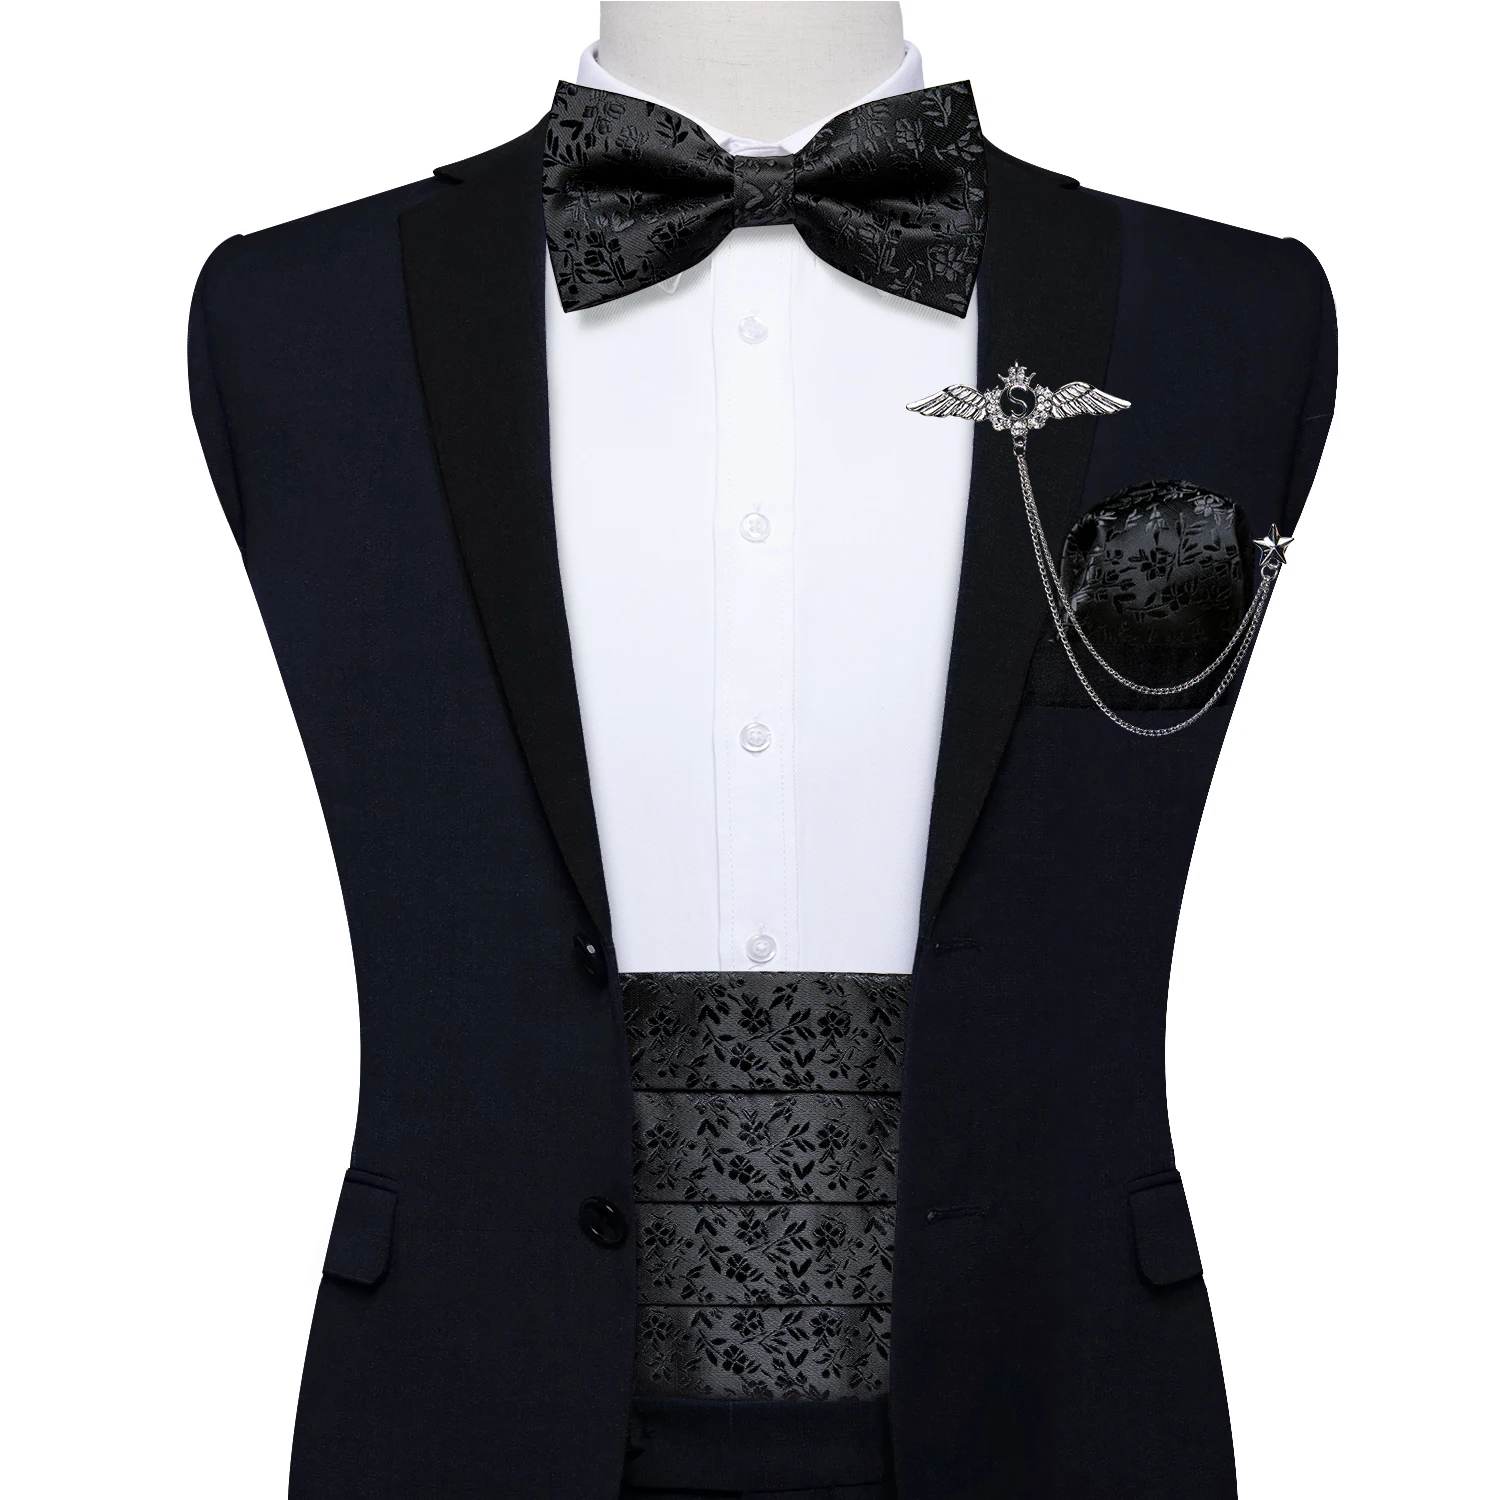 Premium Silk Men's Cummerbund Pre-tied Bow Tie Cufflinks Pocket Square Gift Set Black Adjustable Wedding Party Tuxedo Belt